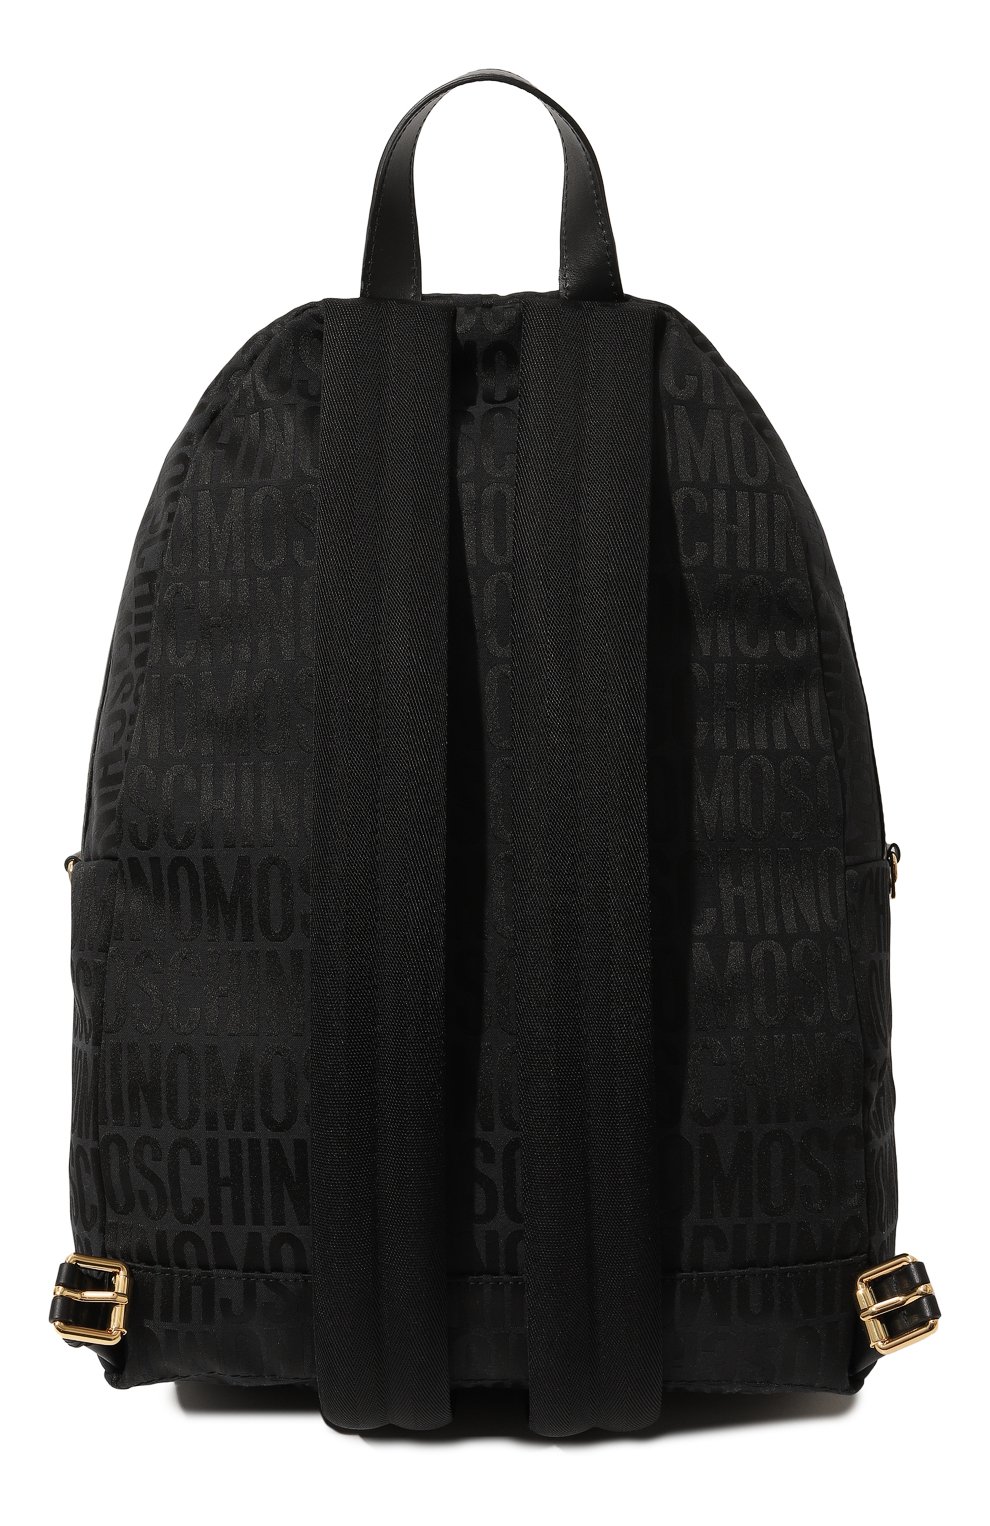 Текстильный рюкзак Moschino A7601/8268, цвет чёрный, размер NS A7601/8268 - фото 6